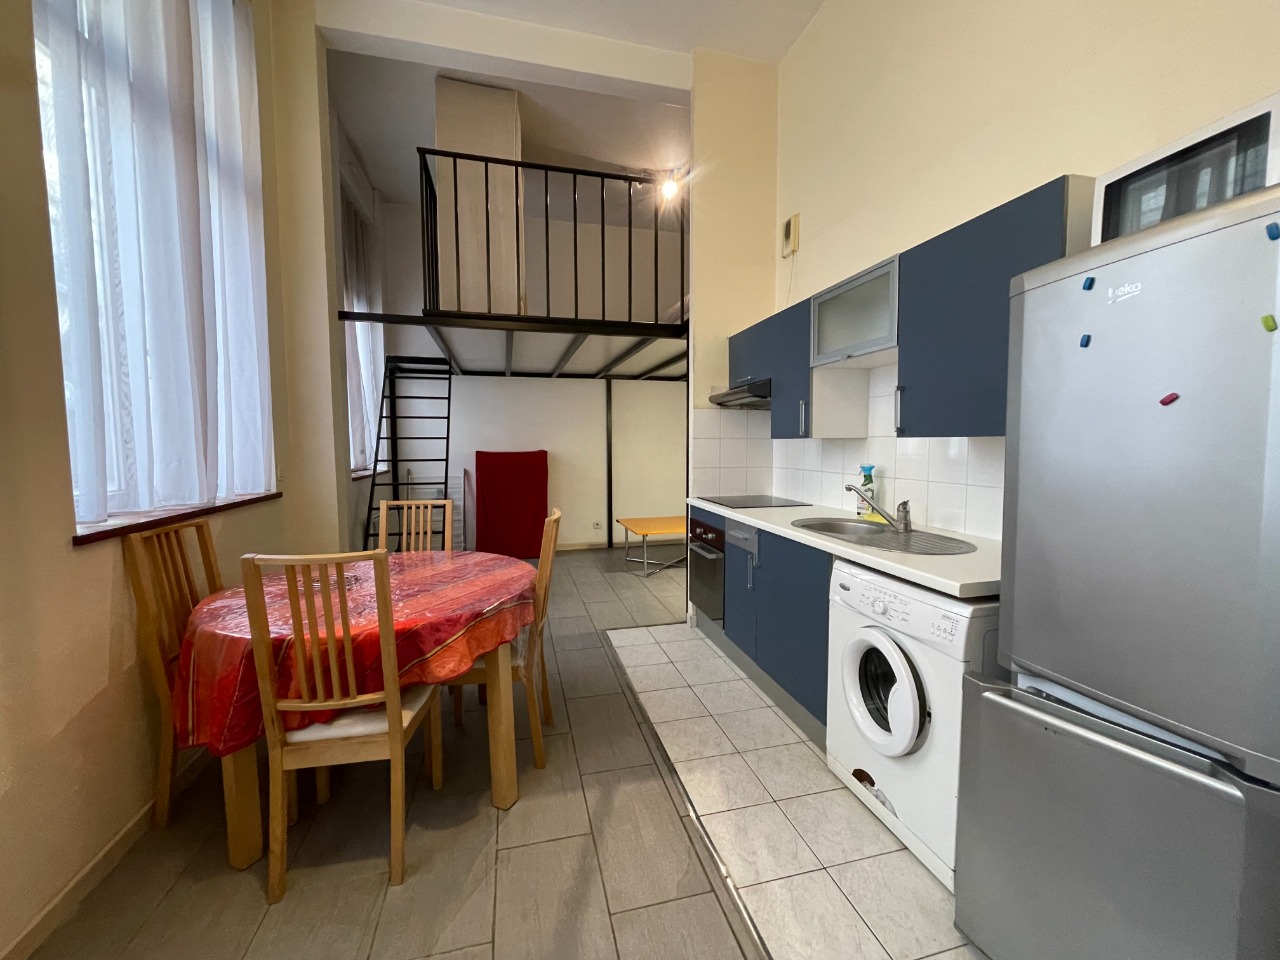 Vente appartement 59000 Lille - Appartement T1 mezzanine 33,20 m2- Lille hypercentre